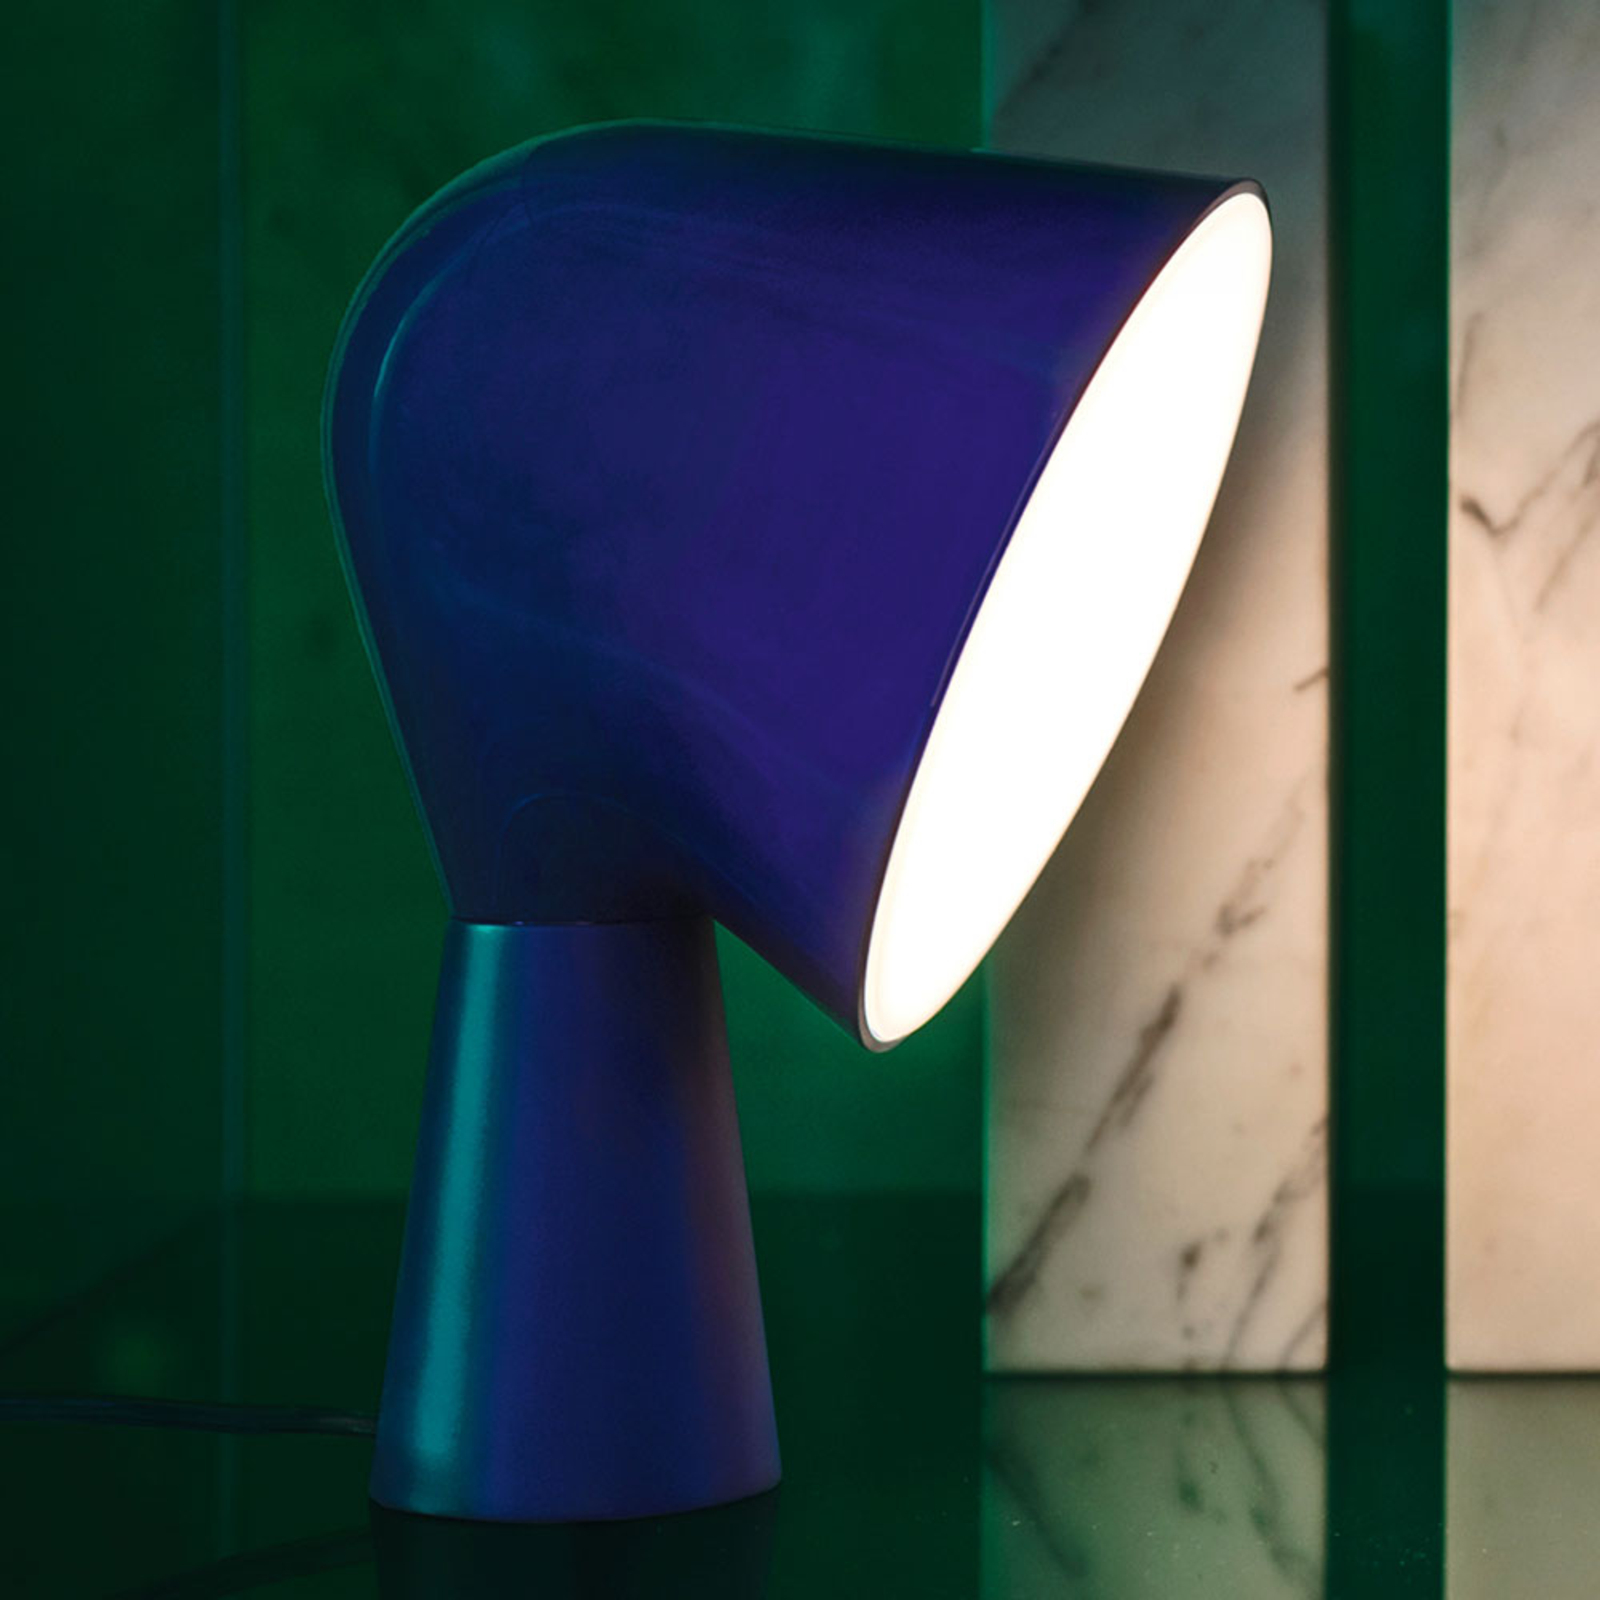 Foscarini Binic designer table lamp, blue